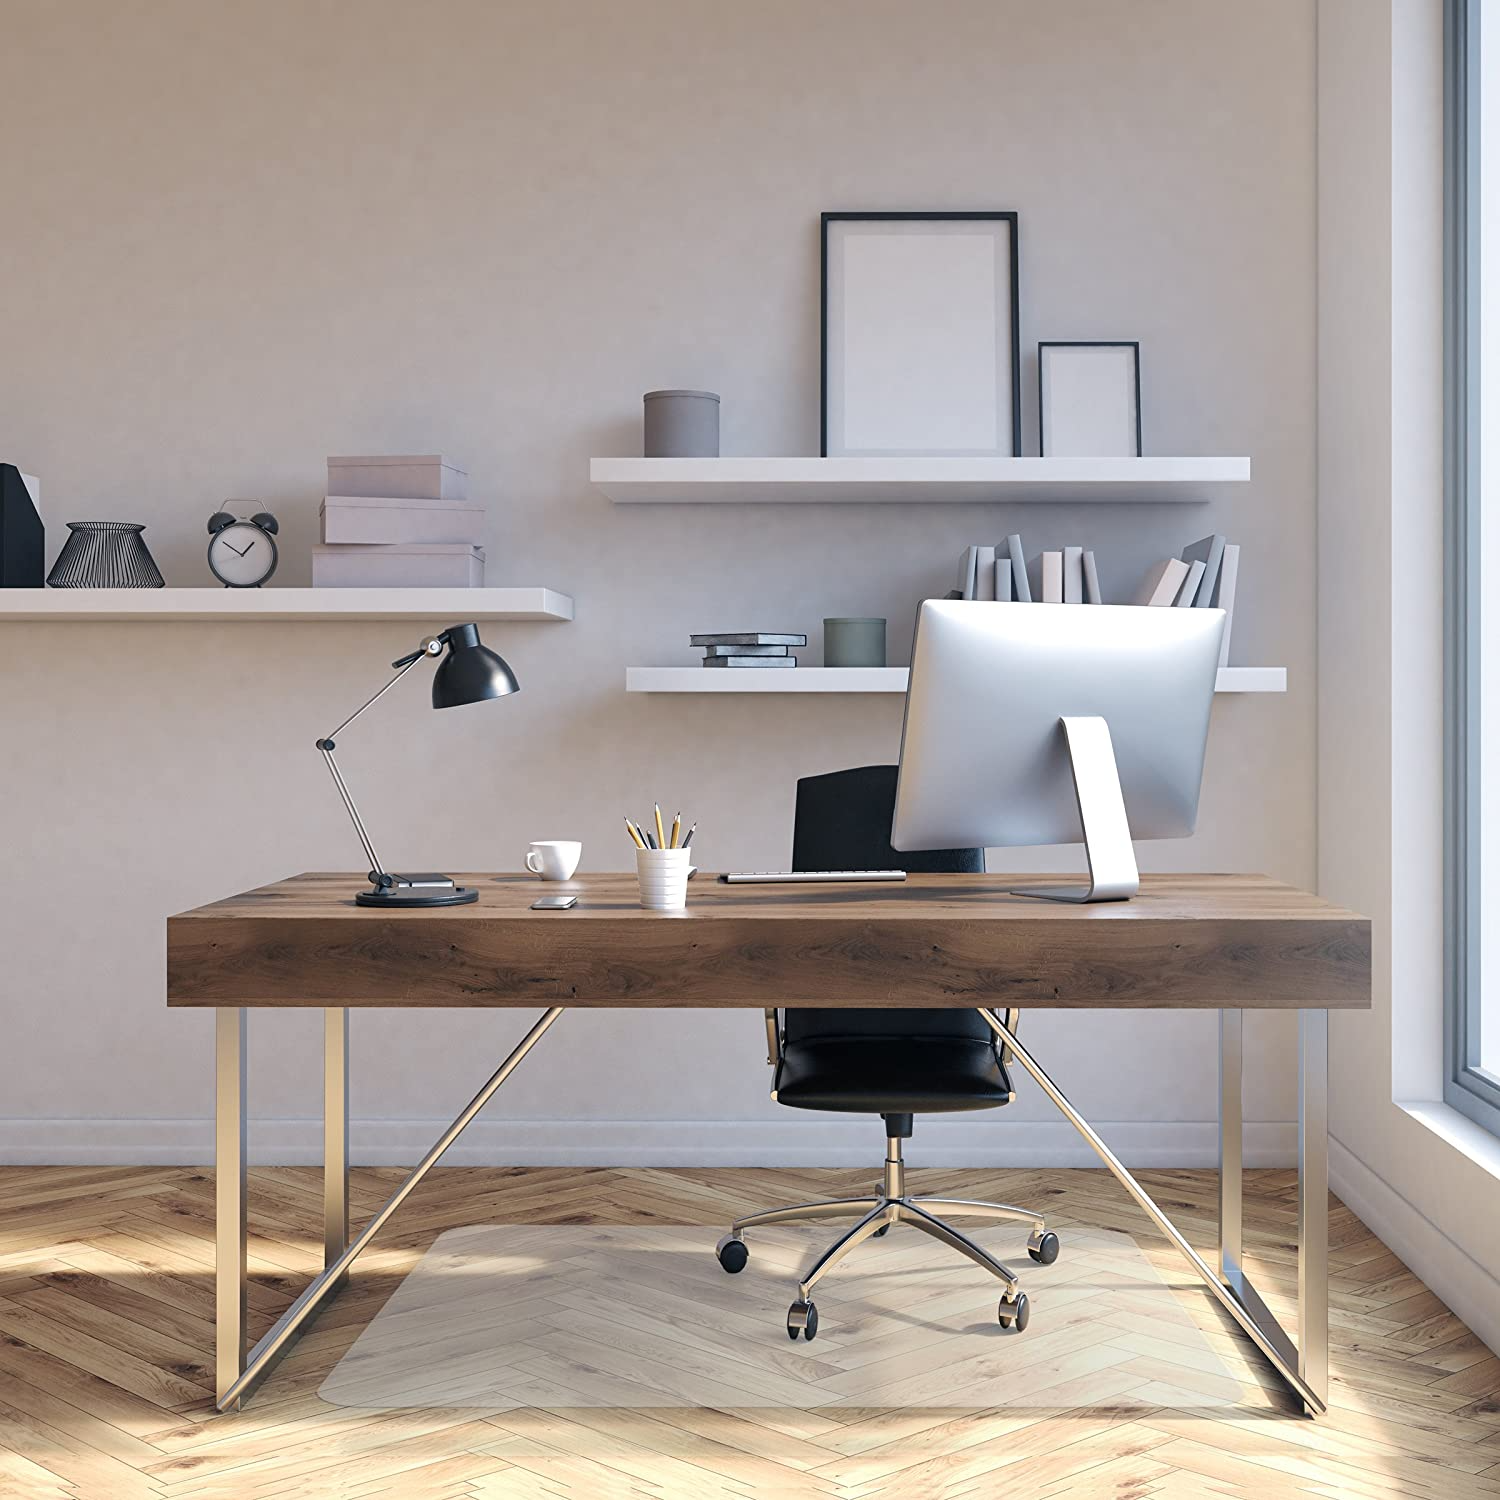 office chair floor mat for hardwood floors